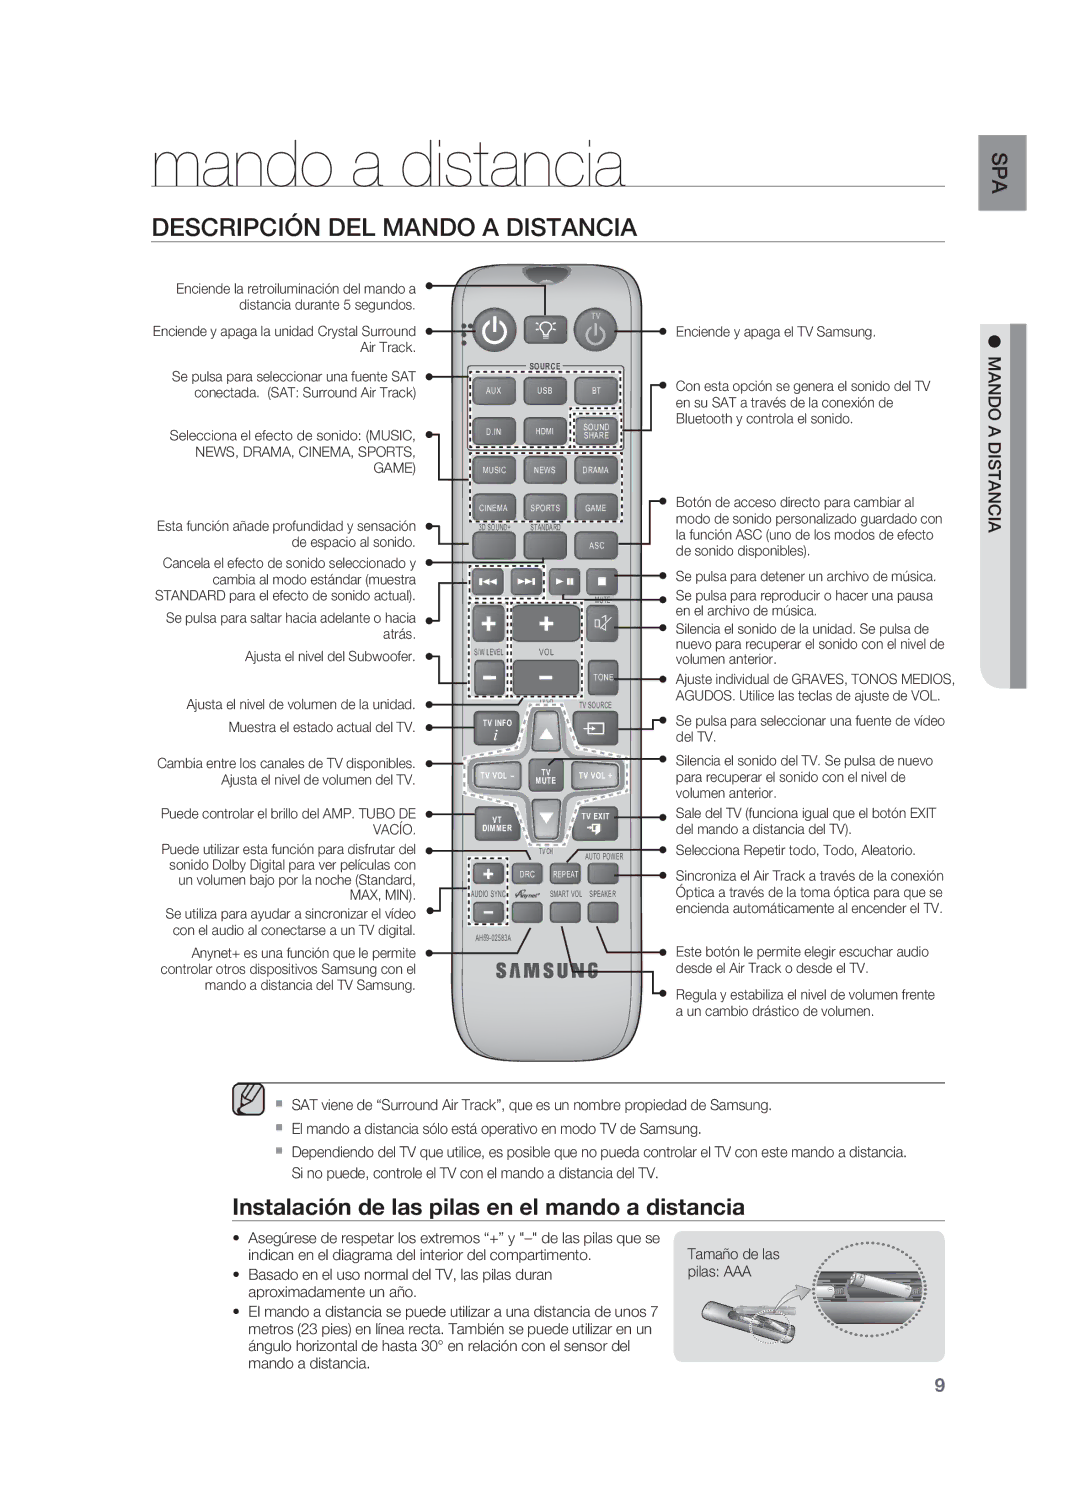 Samsung HW-F850/ZF Mando a distancia, Descripción DEL Mando a Distancia, Instalación de las pilas en el mando a distancia 